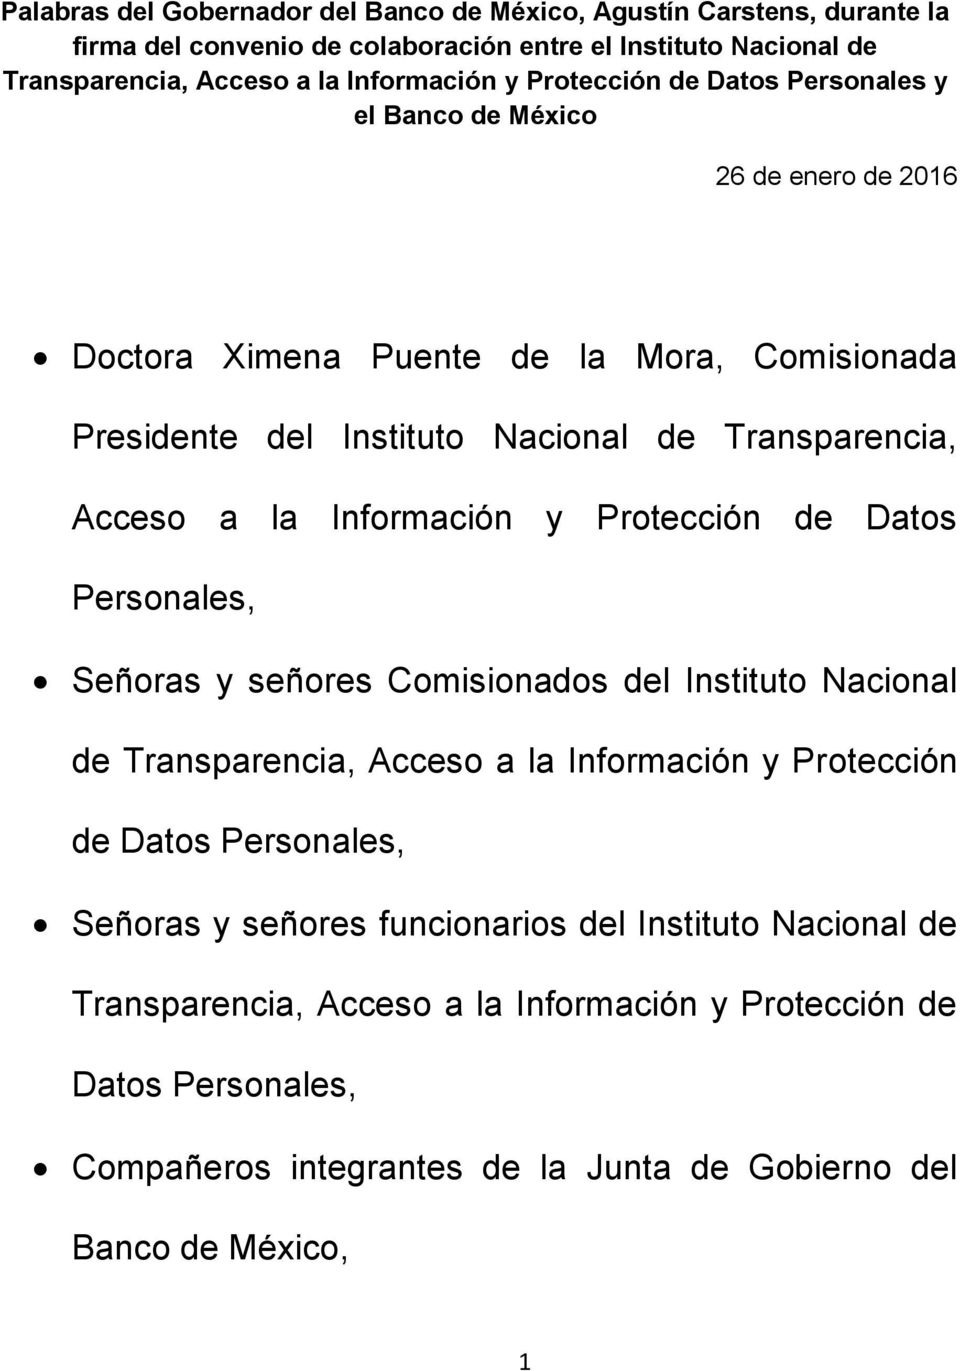 Información y Protección de Datos Personales, Señoras y señores Comisionados del Instituto Nacional de Transparencia, Acceso a la Información y Protección de Datos Personales, Señoras